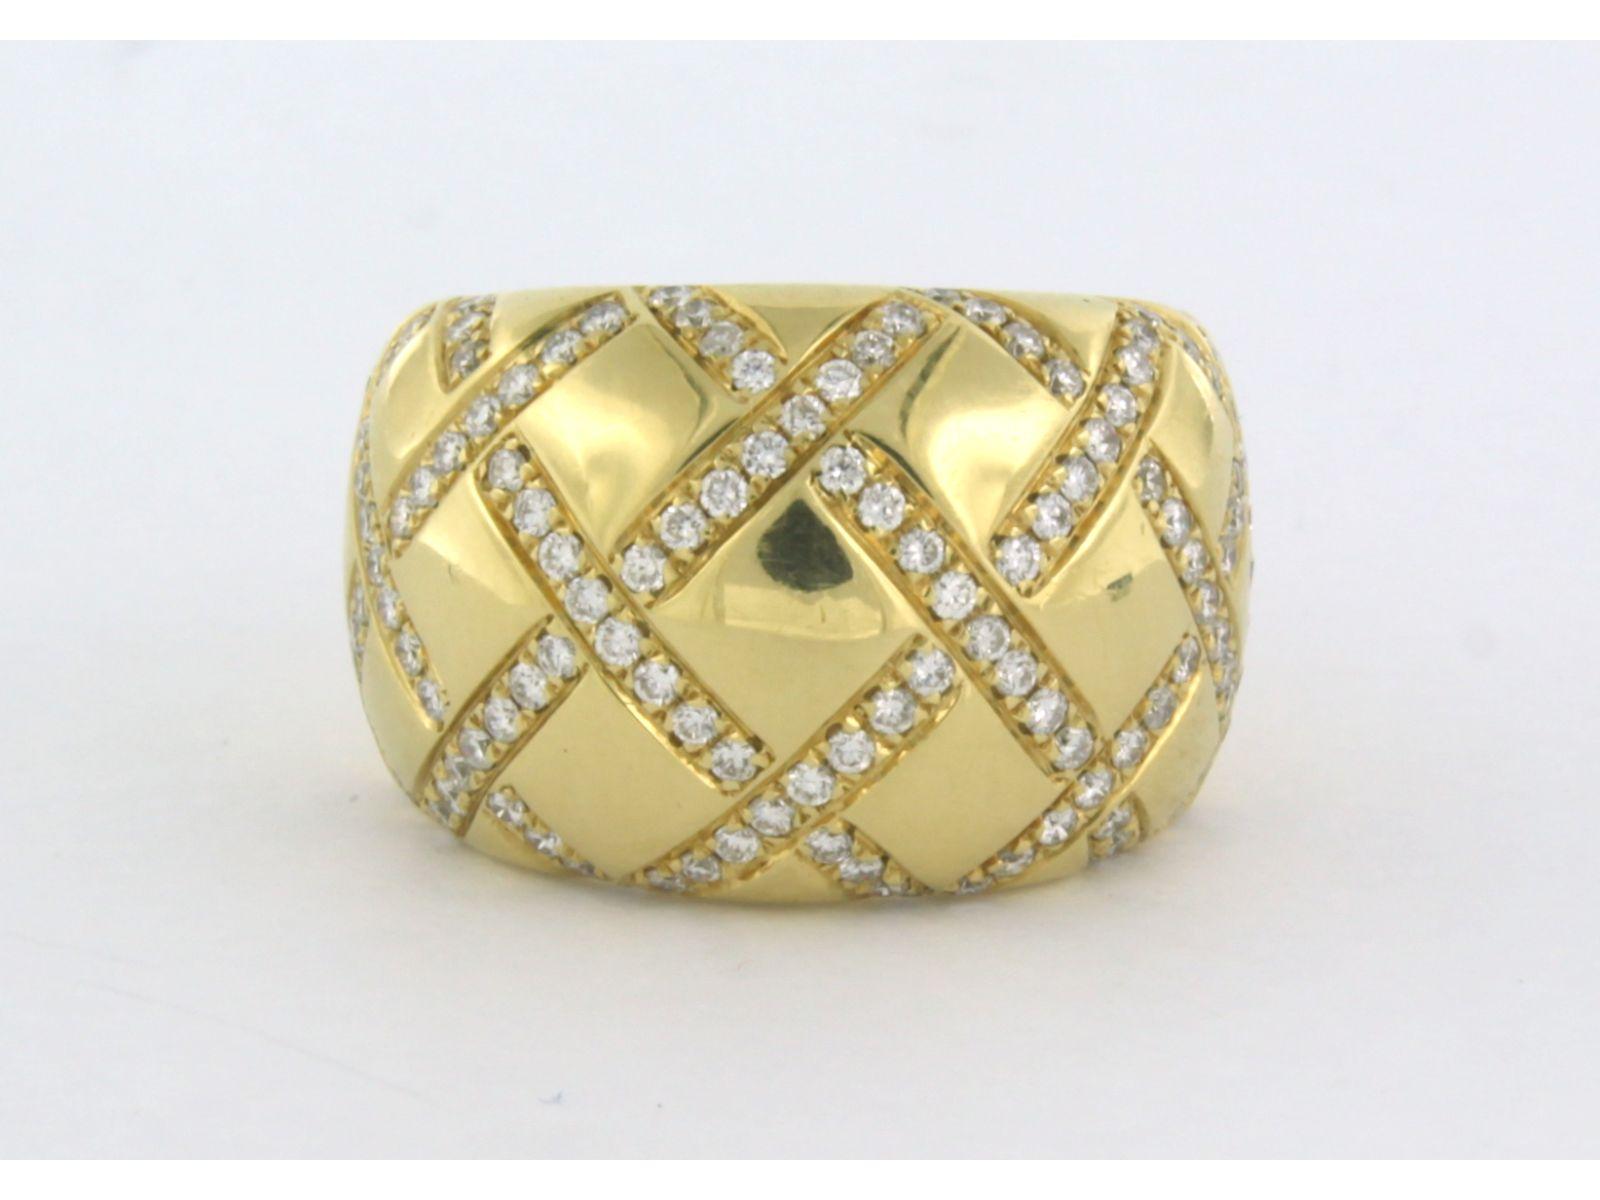 Wempe Ring aus 18k Gelbgold, besetzt mit Diamanten im Brillantschliff bis zu . 1.38ct - F - VS - Ringgröße U.S. 6.5 - EU. 17(53)

detaillierte Beschreibung:

die Oberseite des Rings ist 1.5 cm breit

Ringgröße U.S. 6.5 - EU. 17(53), Ring kann ein